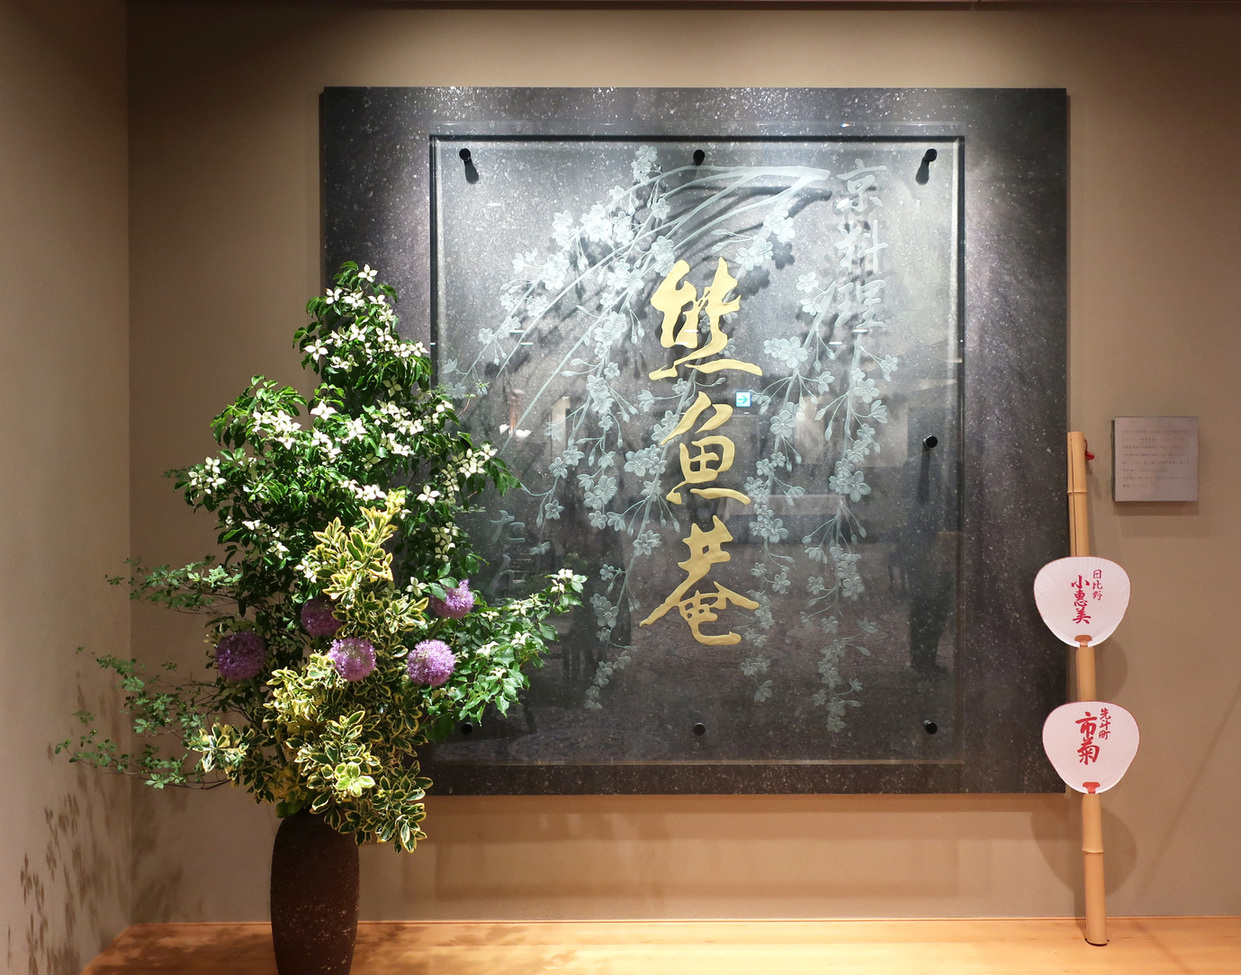 神奈川の夜景ディナーのおすすめ20選　9位:熊魚菴たん熊北店 横浜ホテルニューグランド店